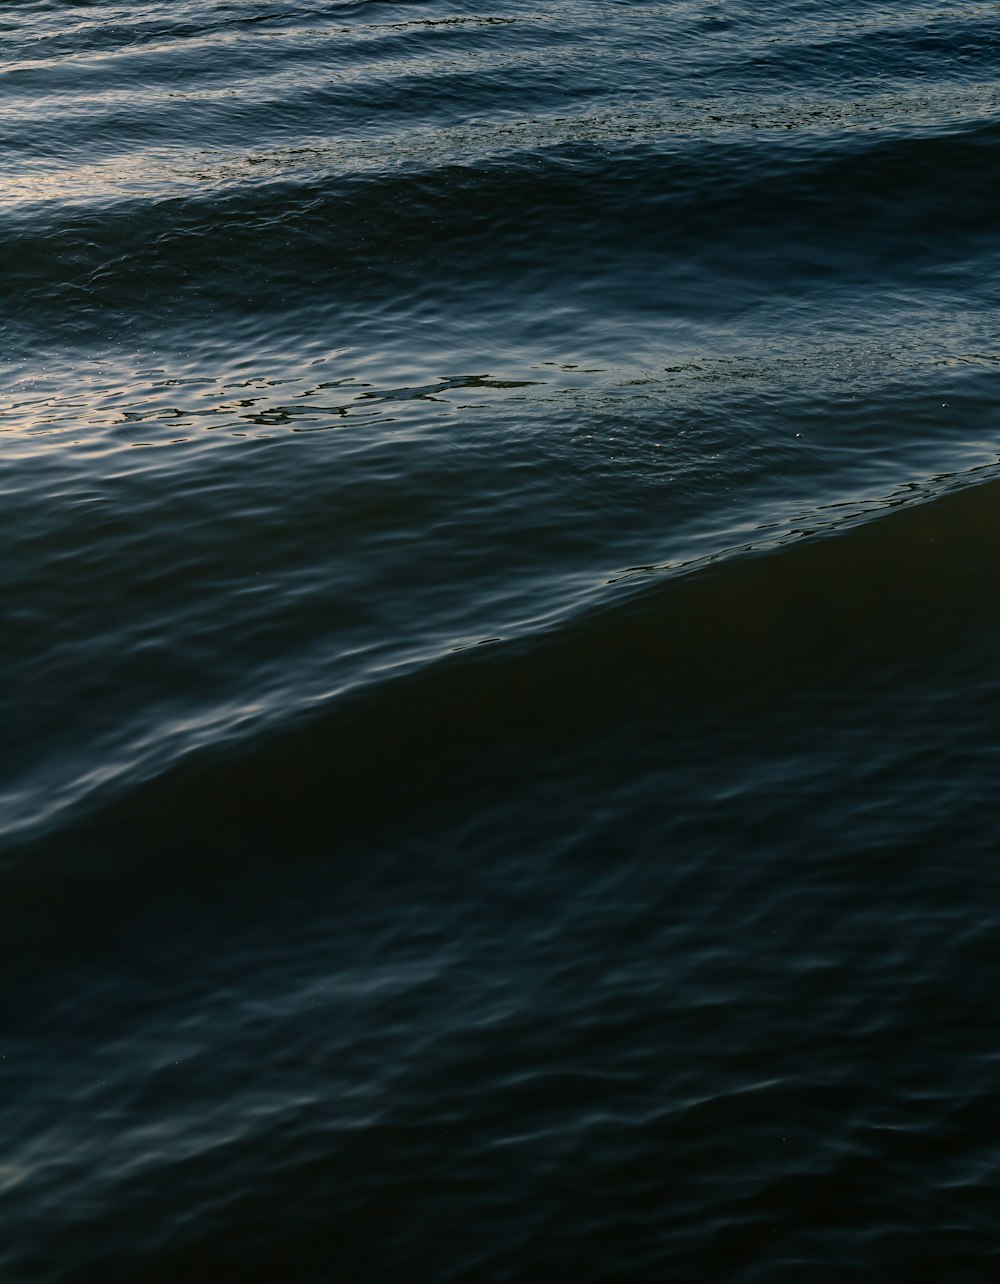 corpo de água com ondas durante o dia